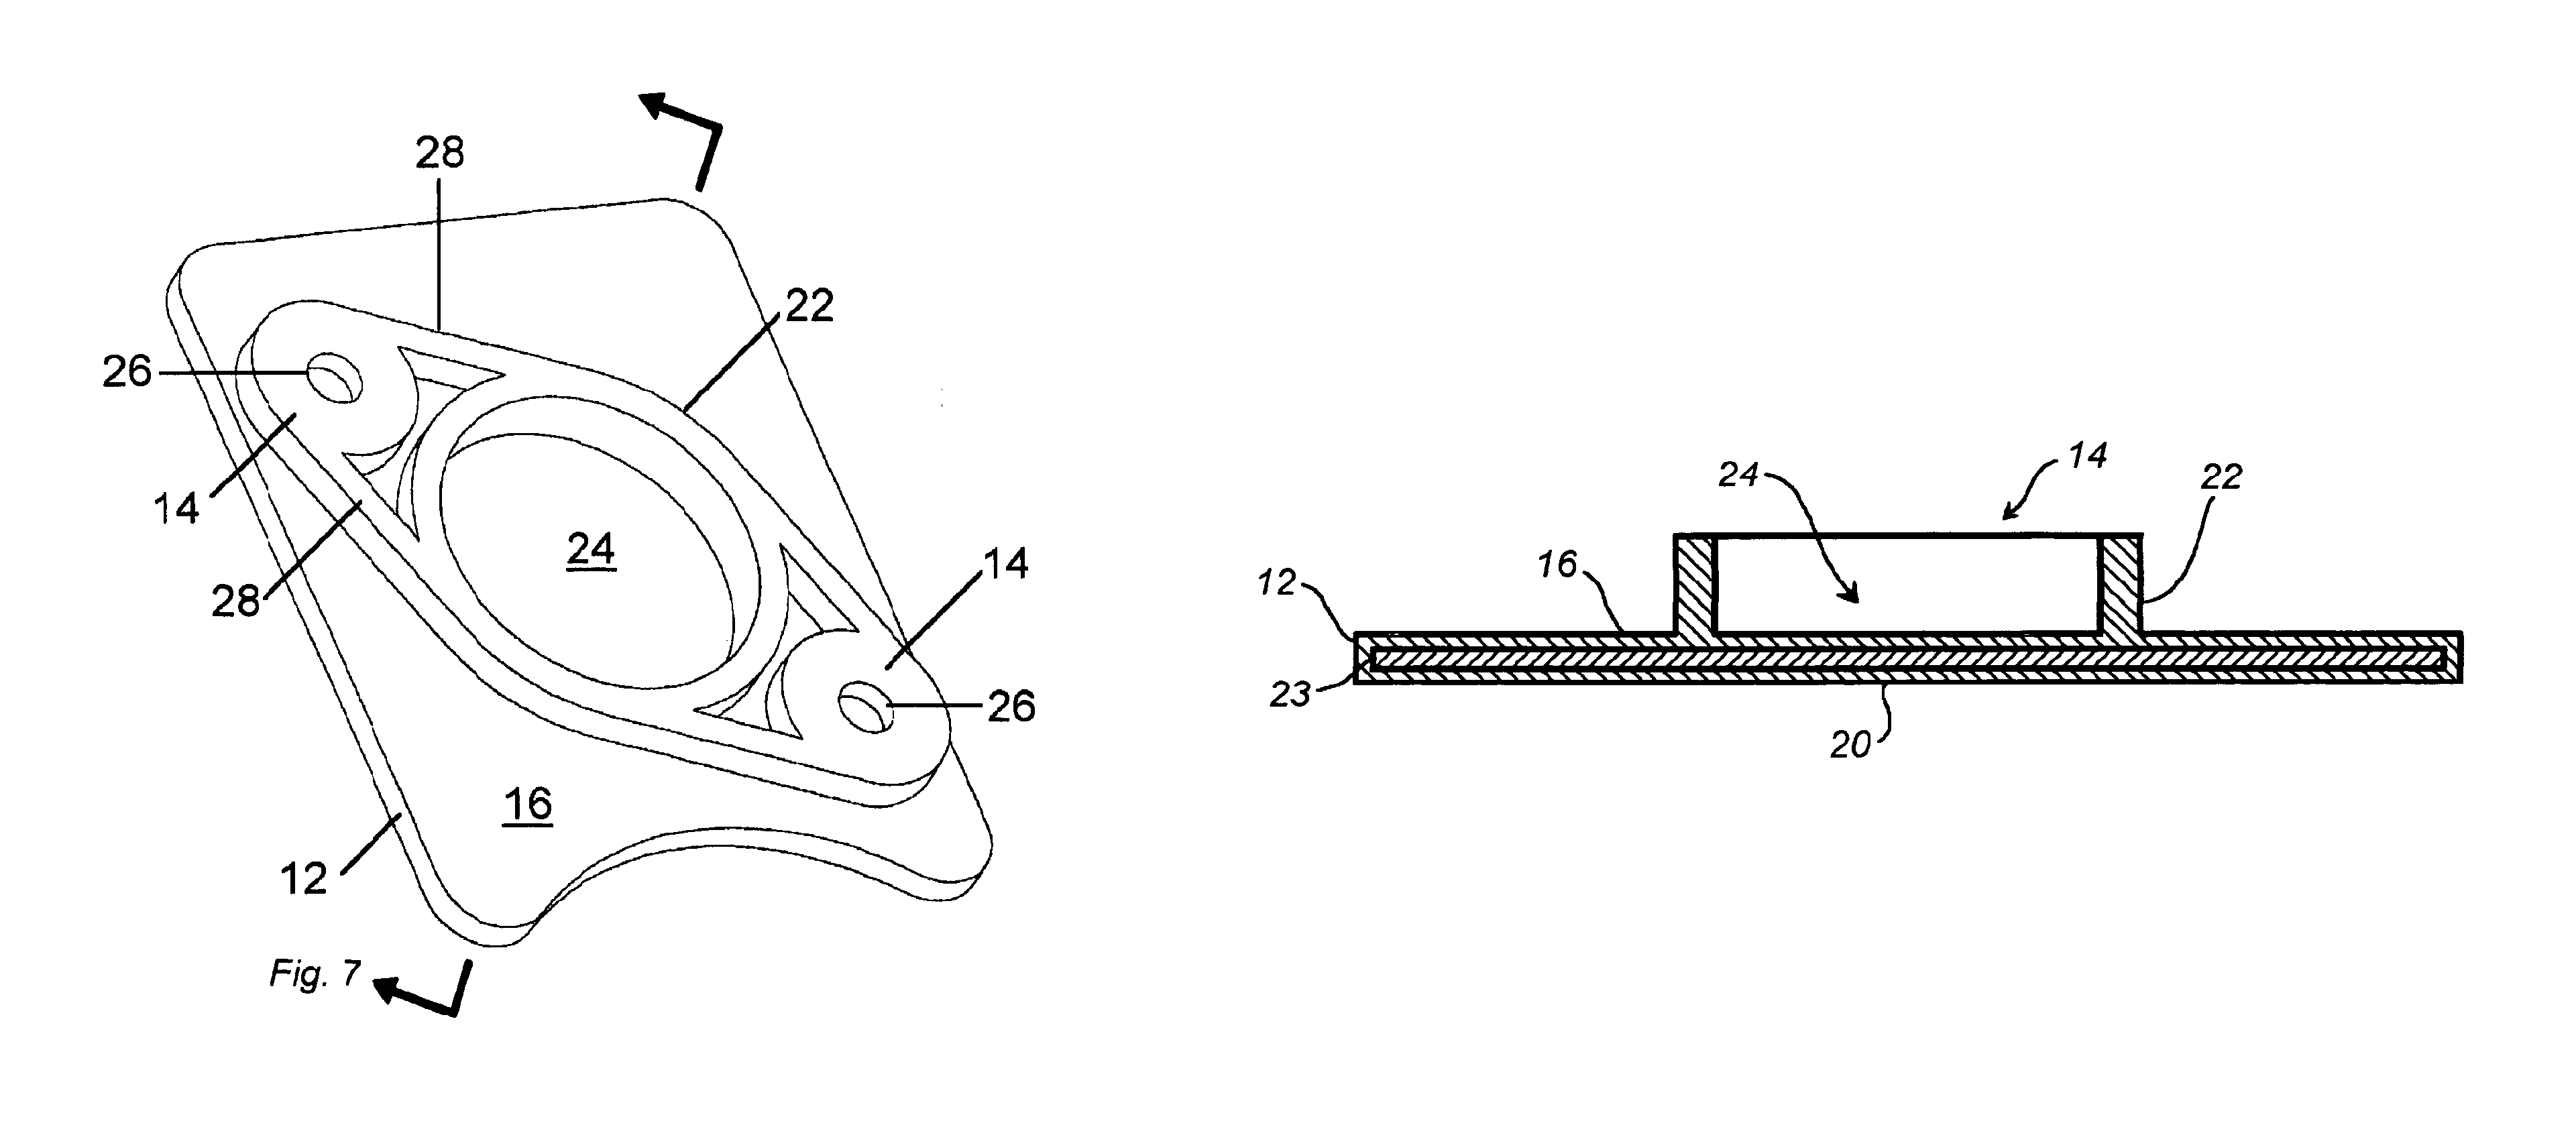 Magnetic mounting platform